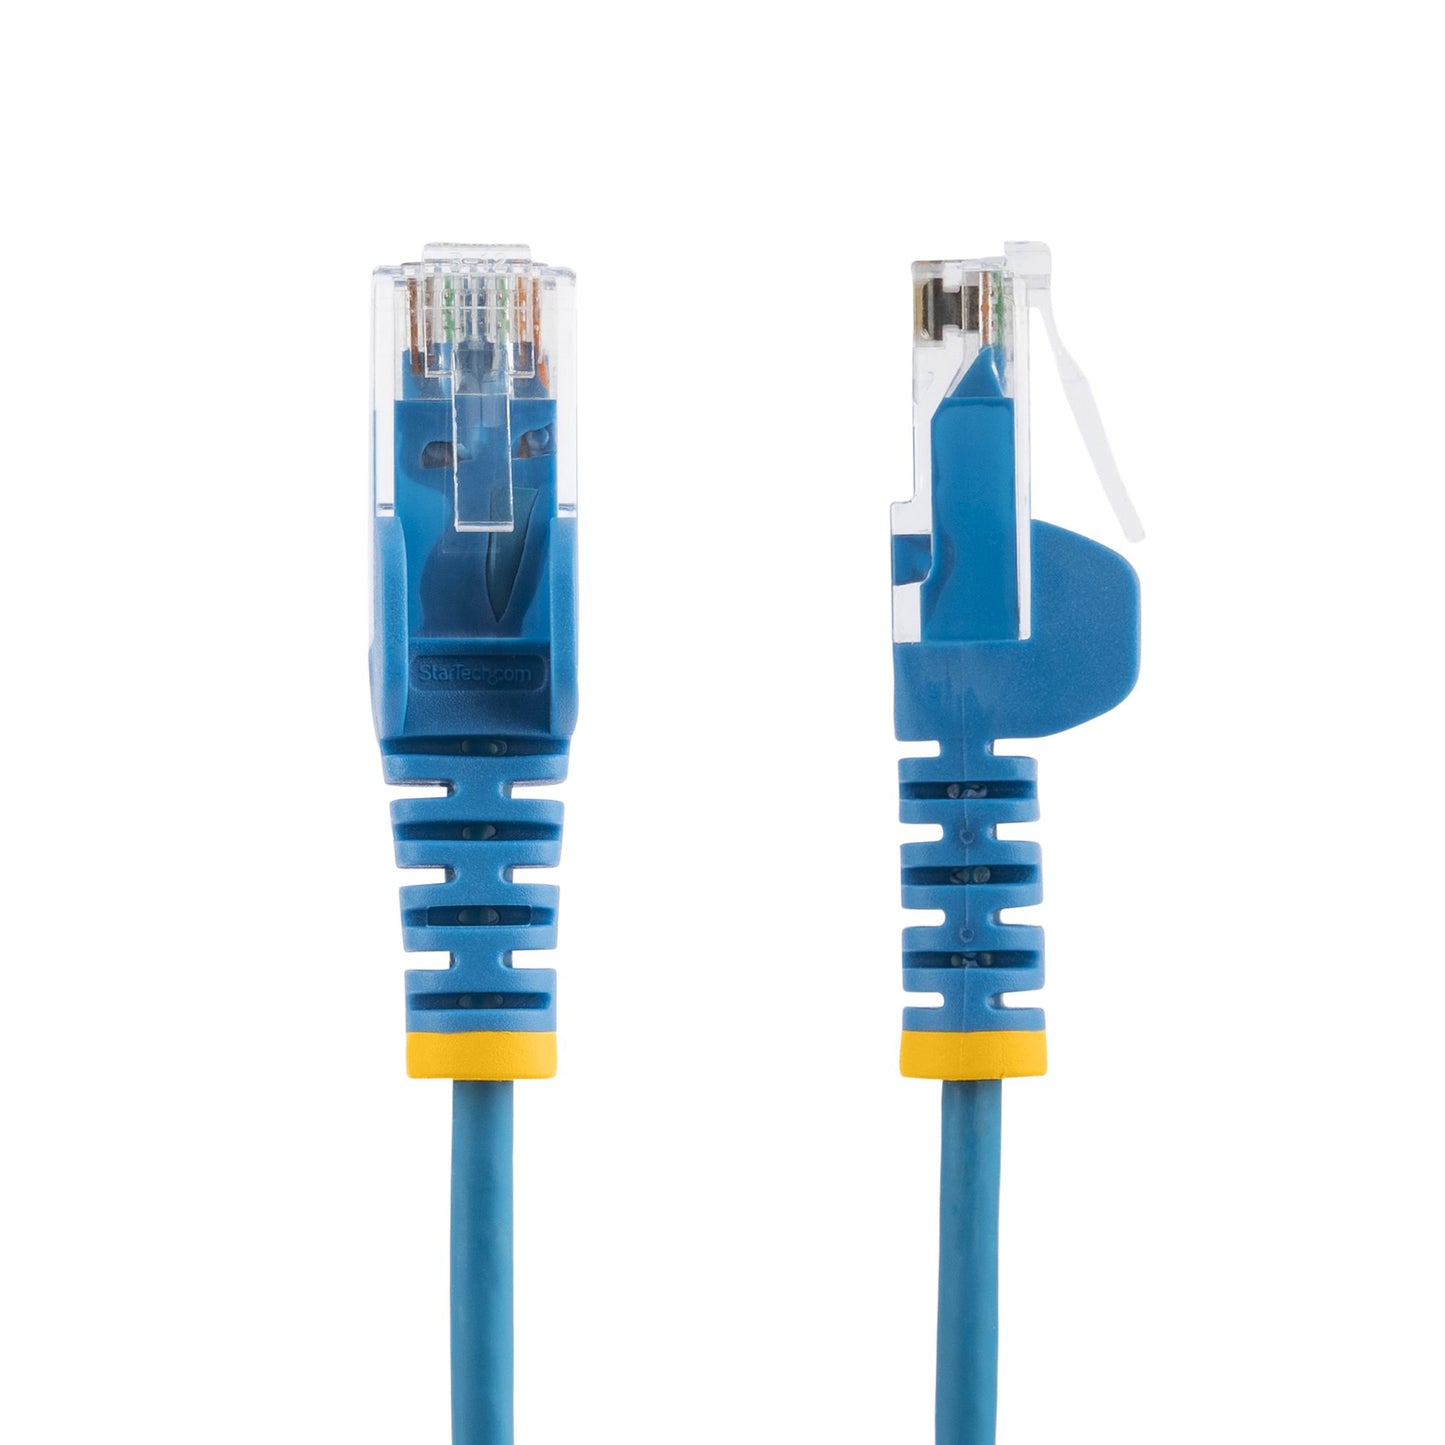 StarTech.com 2 m CAT6 Cable - Slim - Snagless RJ45 Connectors - Blue-1